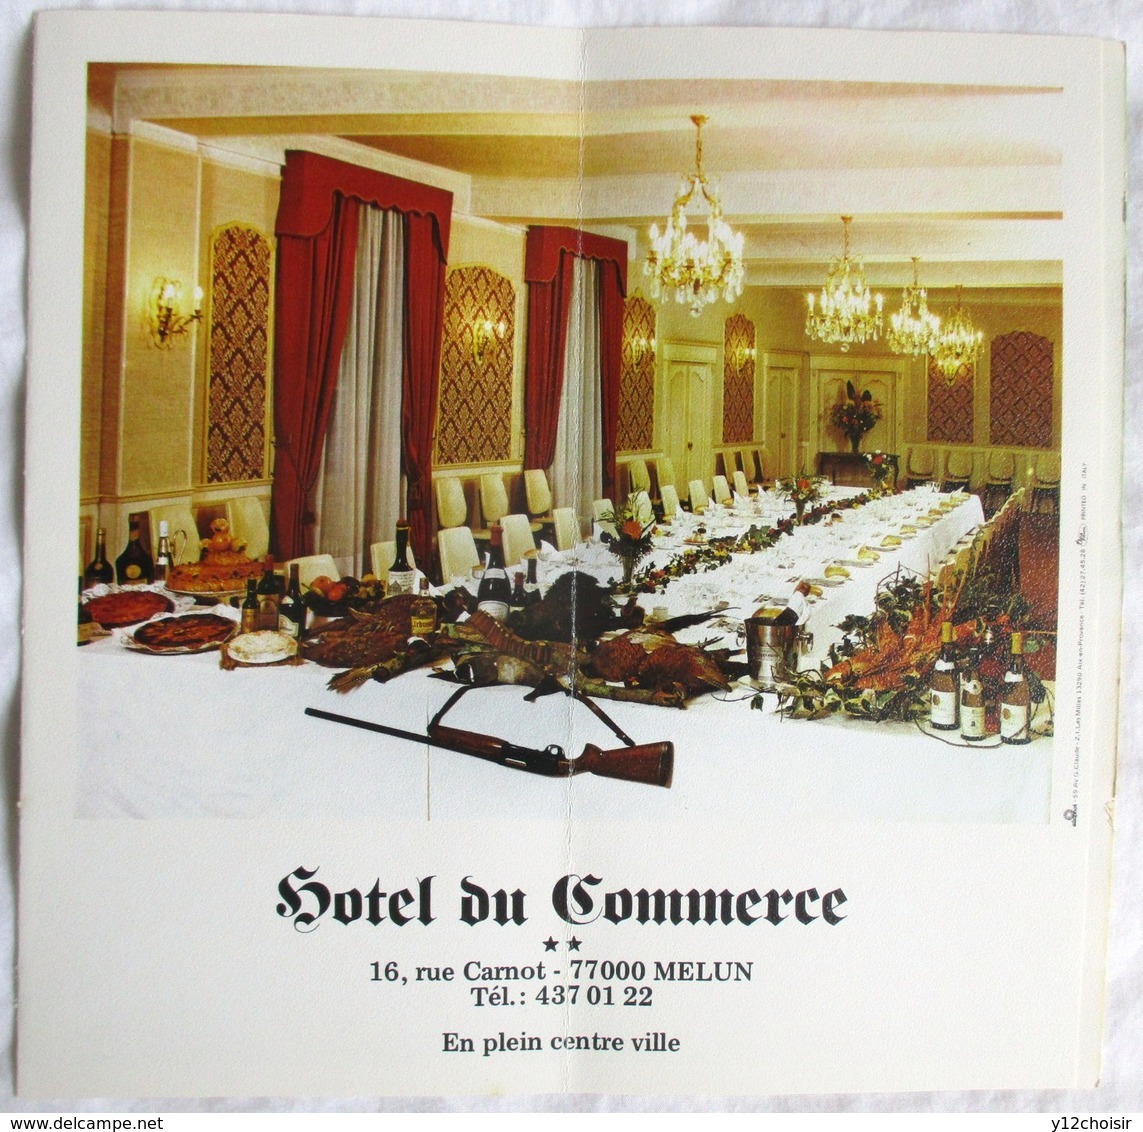 DEPLIANT 1985 HOTEL RESTAURANT DU COMMERCE MELUN 16 RUE CARNOT SEINE ET MARNE - Advertising